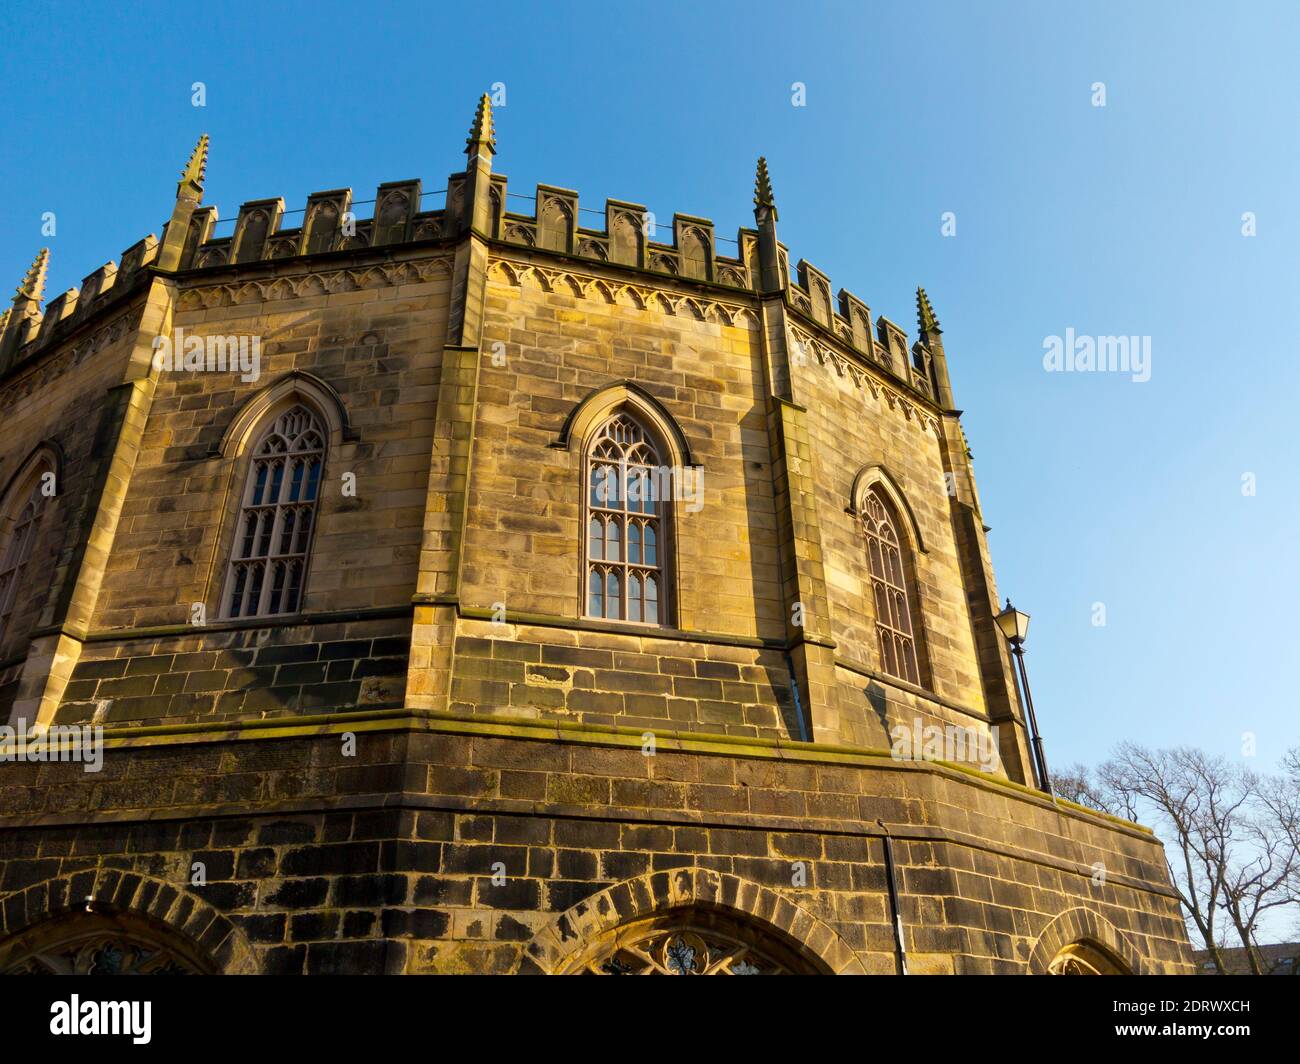 Le bâtiment Shire Hall de style gothique au château de Lancaster dans La ville de Lancaster Lancashire Angleterre Royaume-Uni Banque D'Images